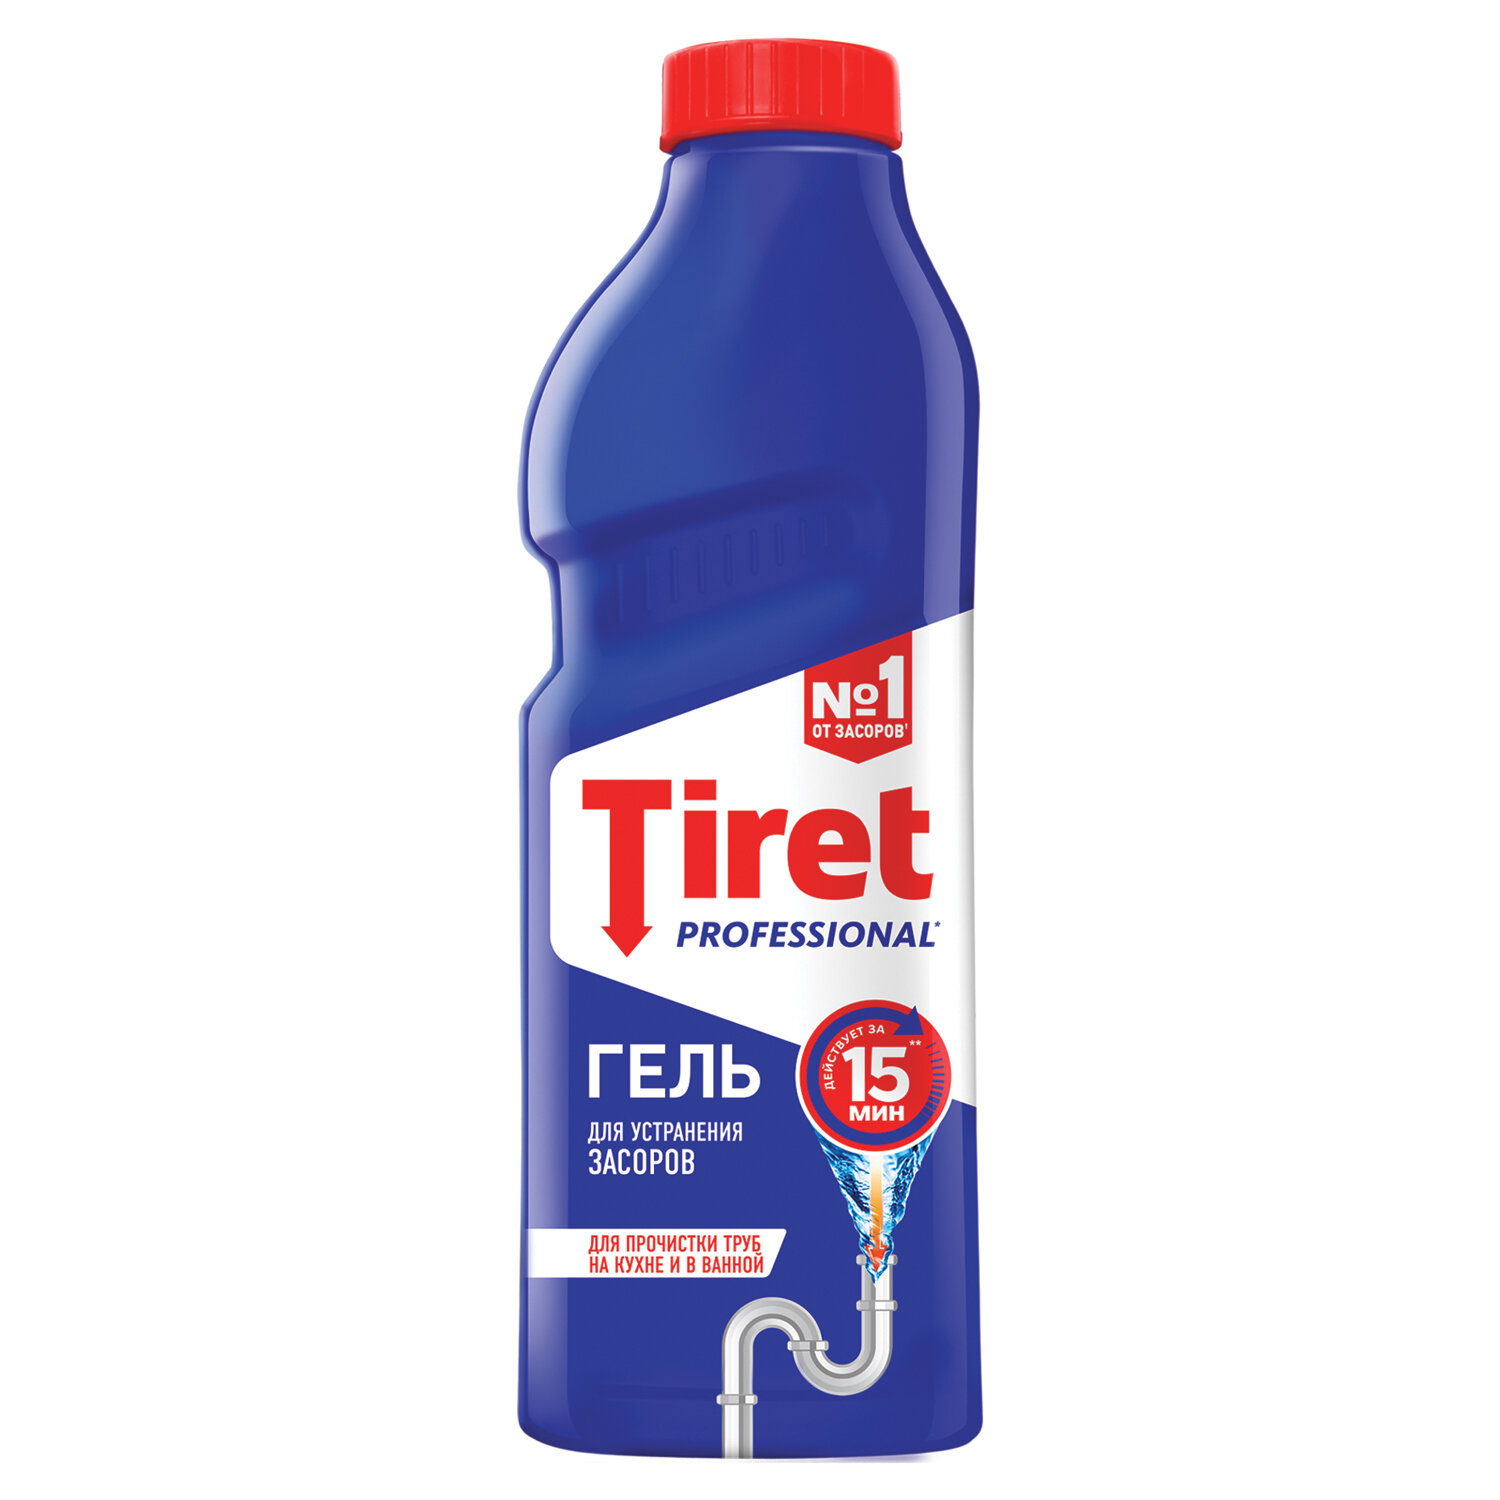 TIRET Средство для прочистки канализационных труб 1 л, TIRET (Тирет) Professional, гель